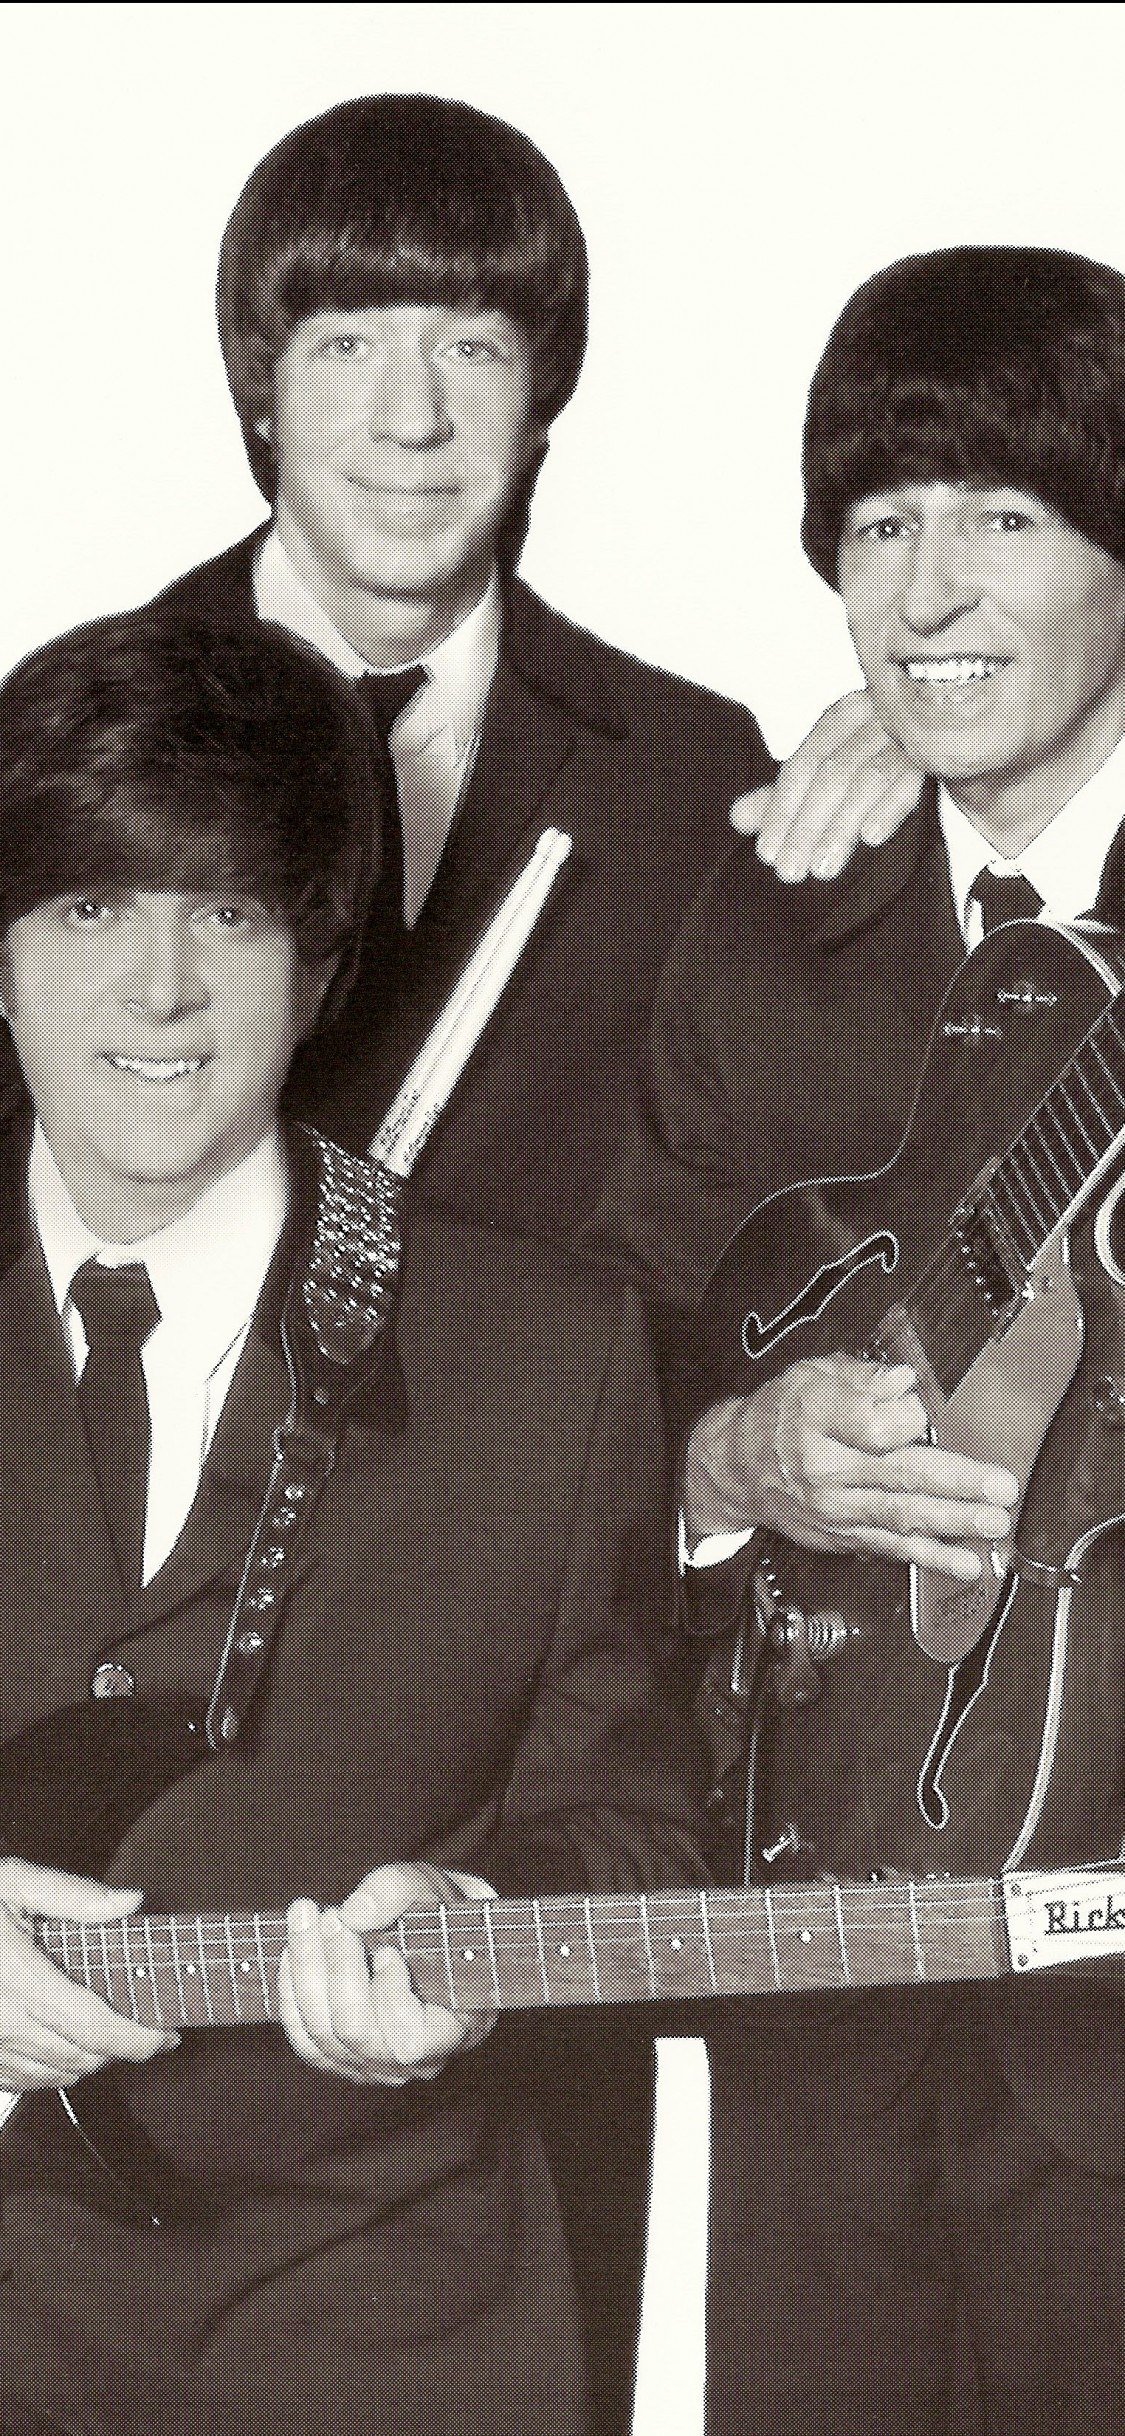 Download Guitar, The Beatles Wallpaper - Gentleman , HD Wallpaper & Backgrounds